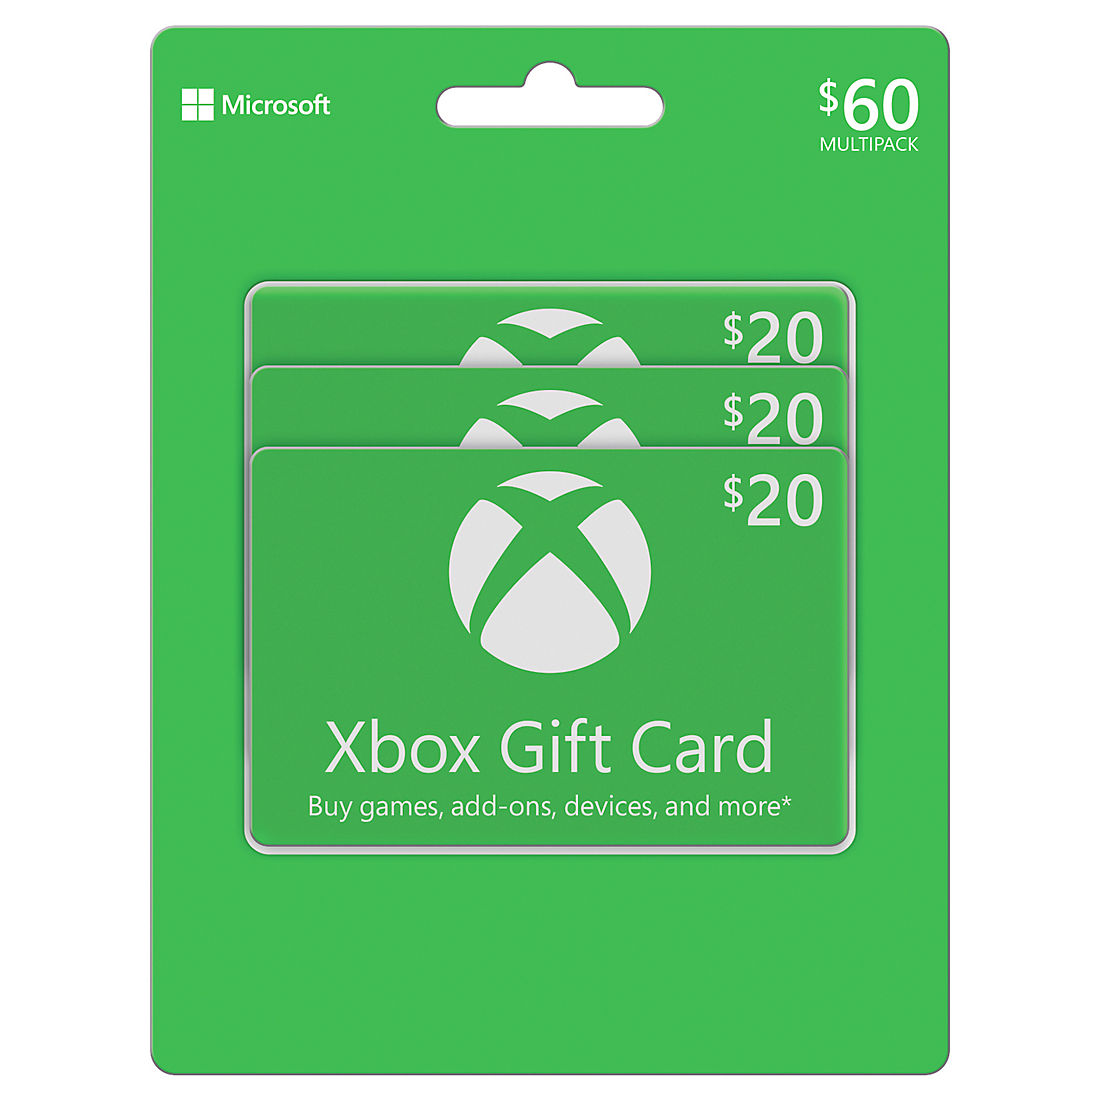 Verzadigen Uitdrukkelijk stap $60 Xbox Gift Card - BJs Wholesale Club